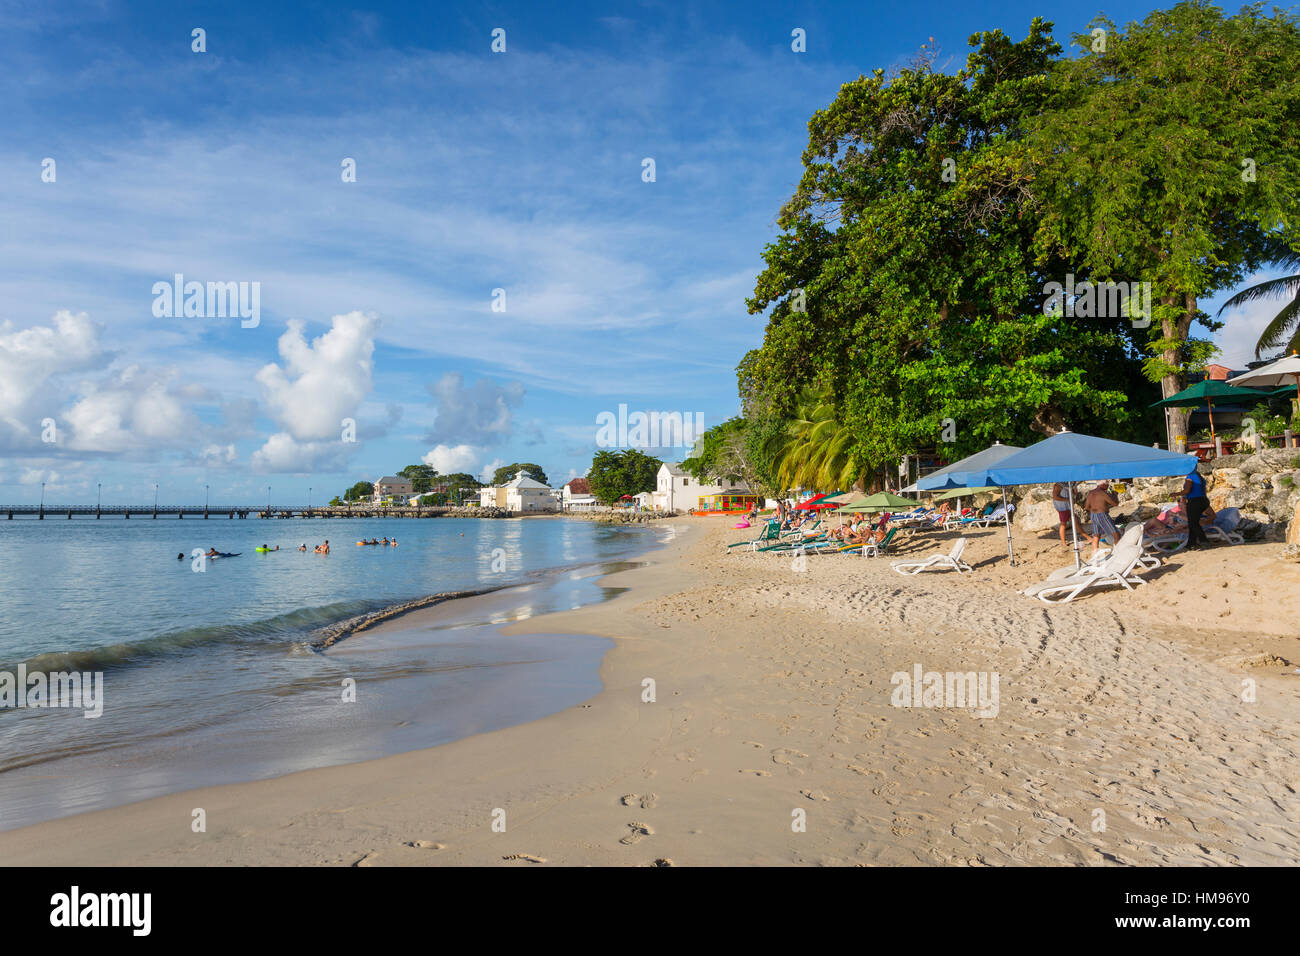 La plage, Speightstown, Saint Pierre, la Barbade, Antilles, Caraïbes, Amérique Centrale Banque D'Images